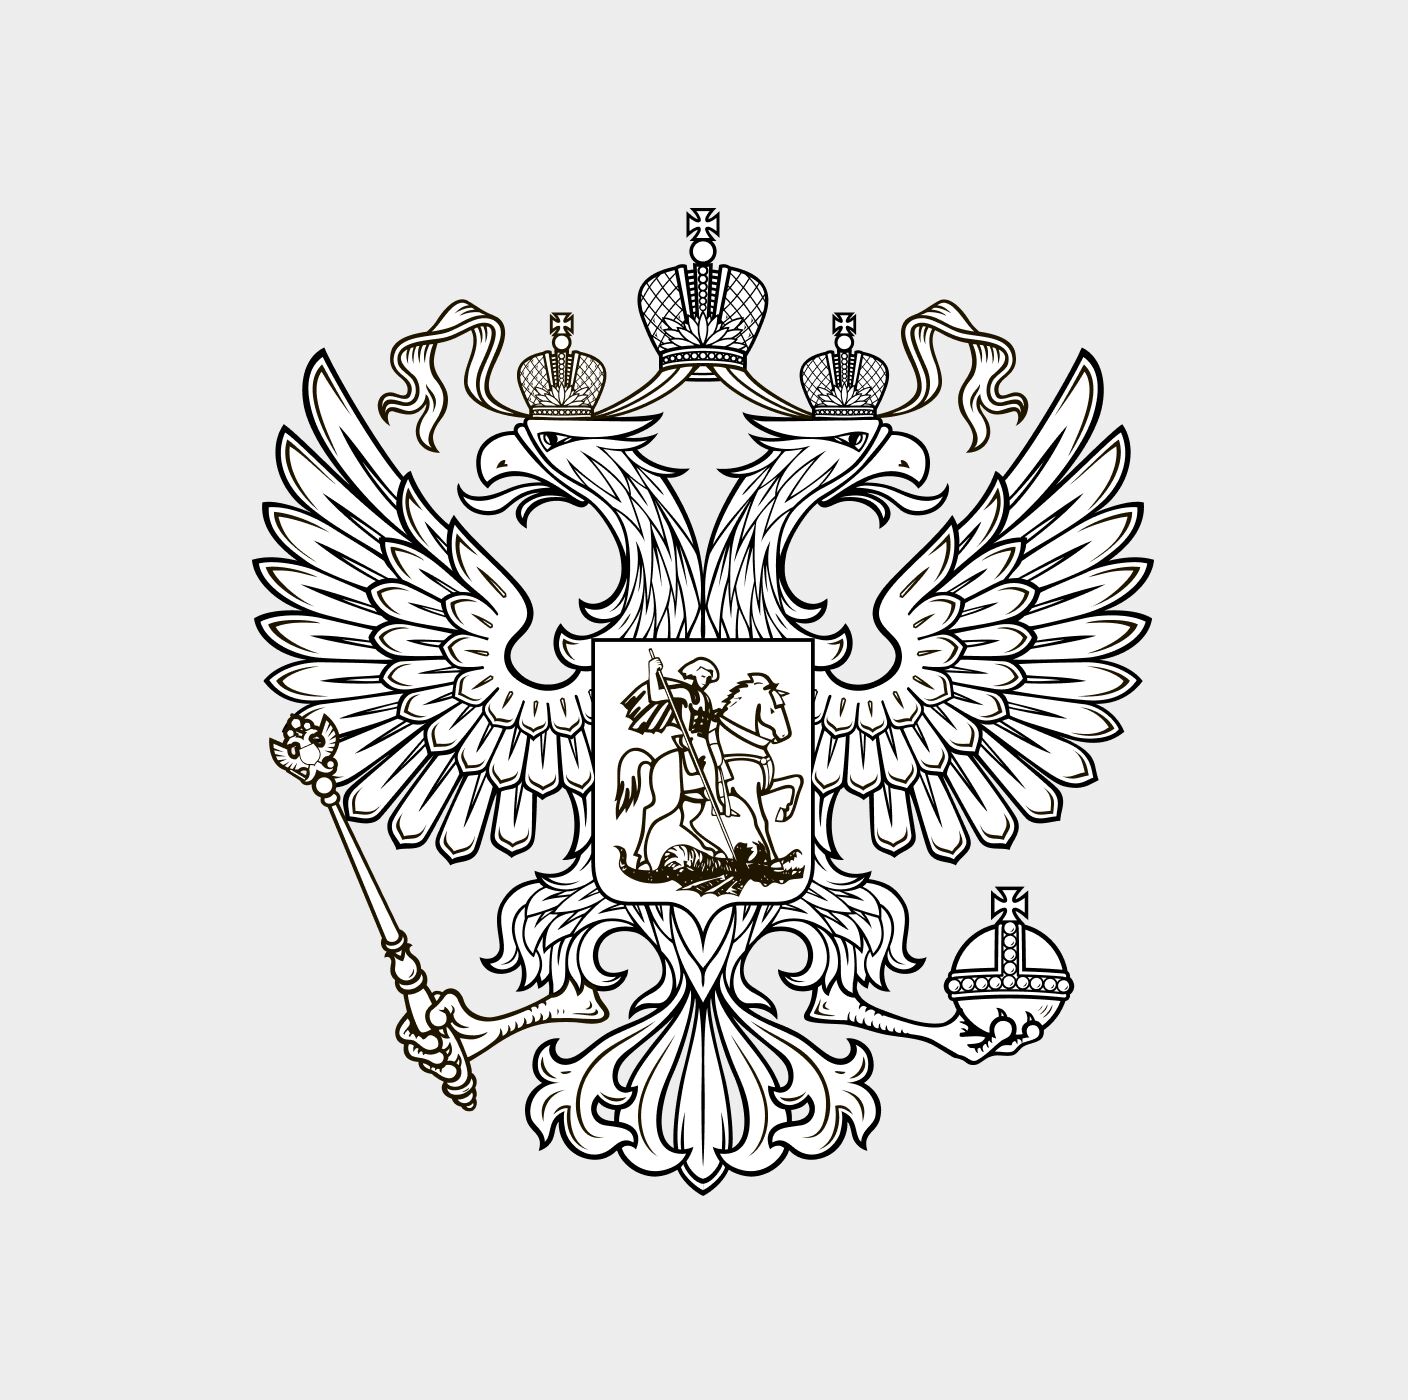 Герб россии контурный рисунок